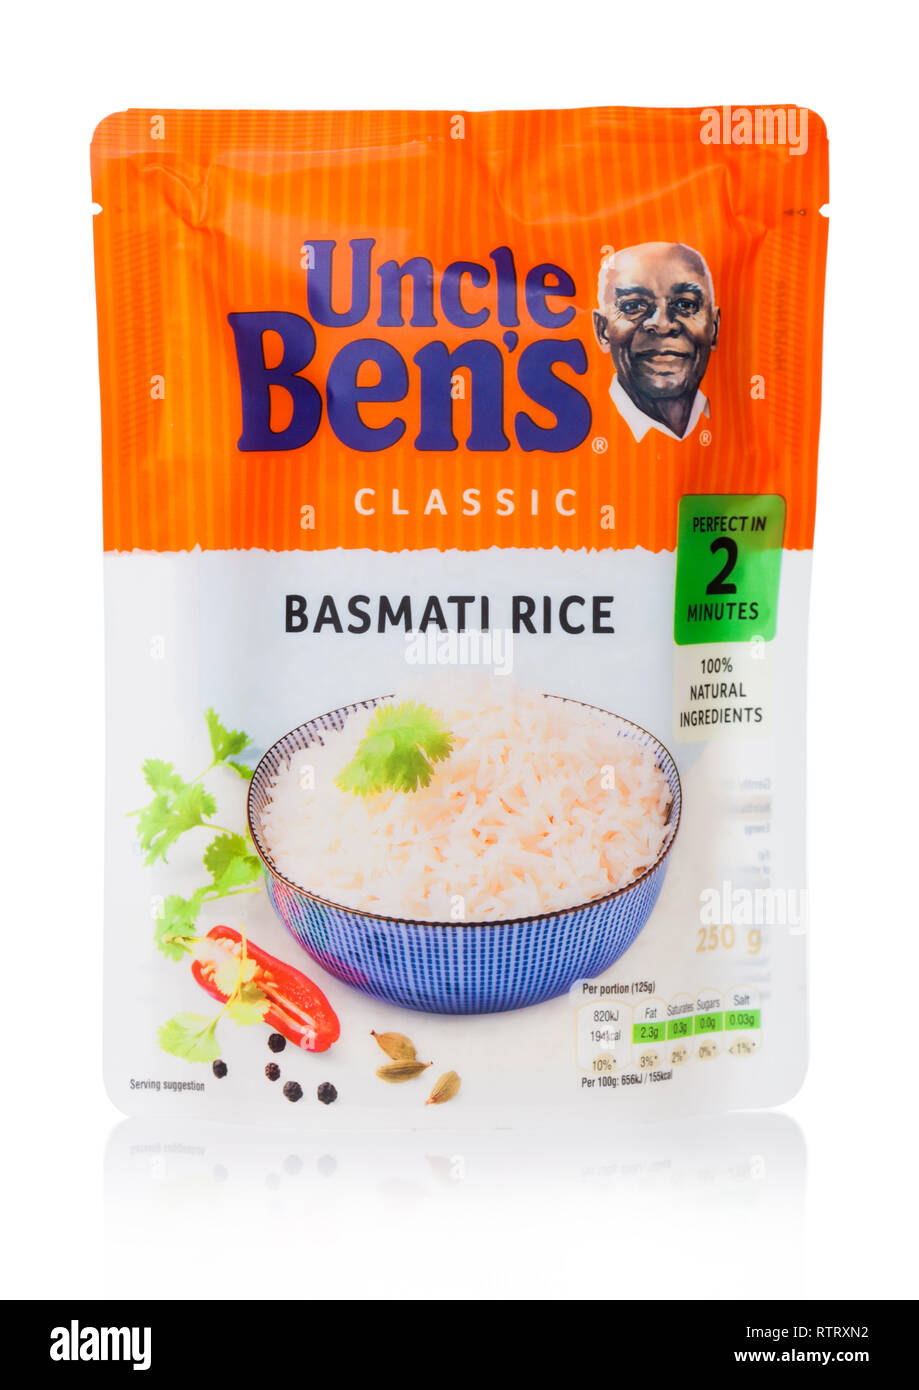 Riz Basmati Express - Uncle Ben's - 250 g e